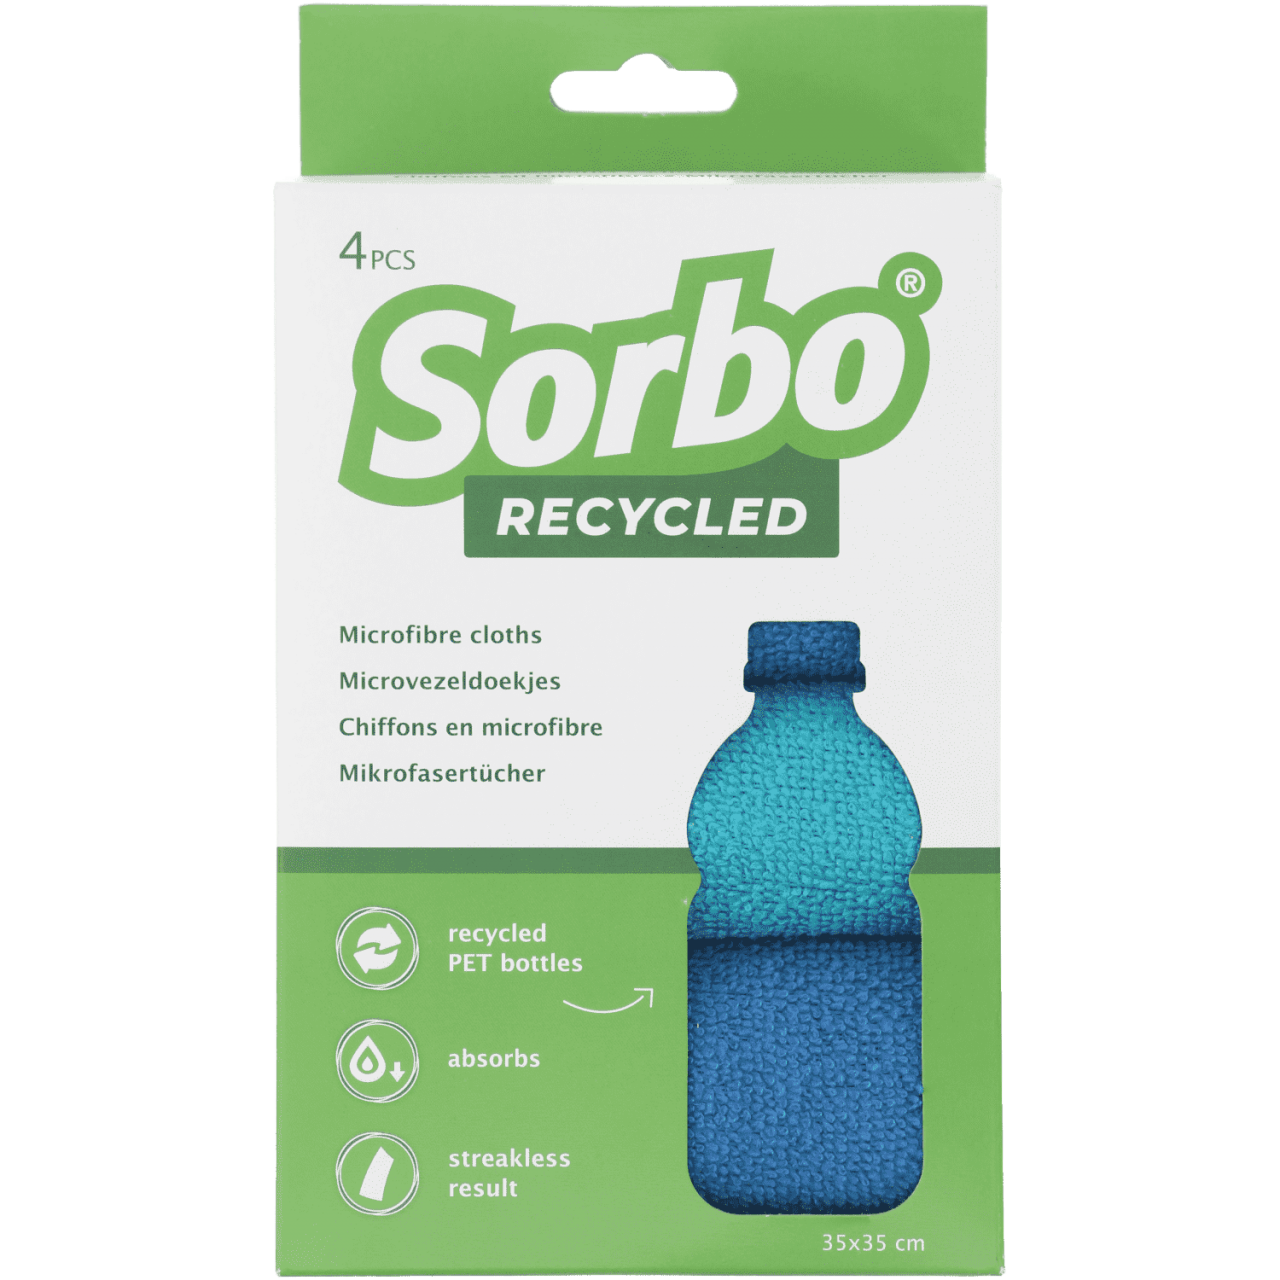 Sorbo Recycled Microvezeldoekjes 35x35cm 4 stuks